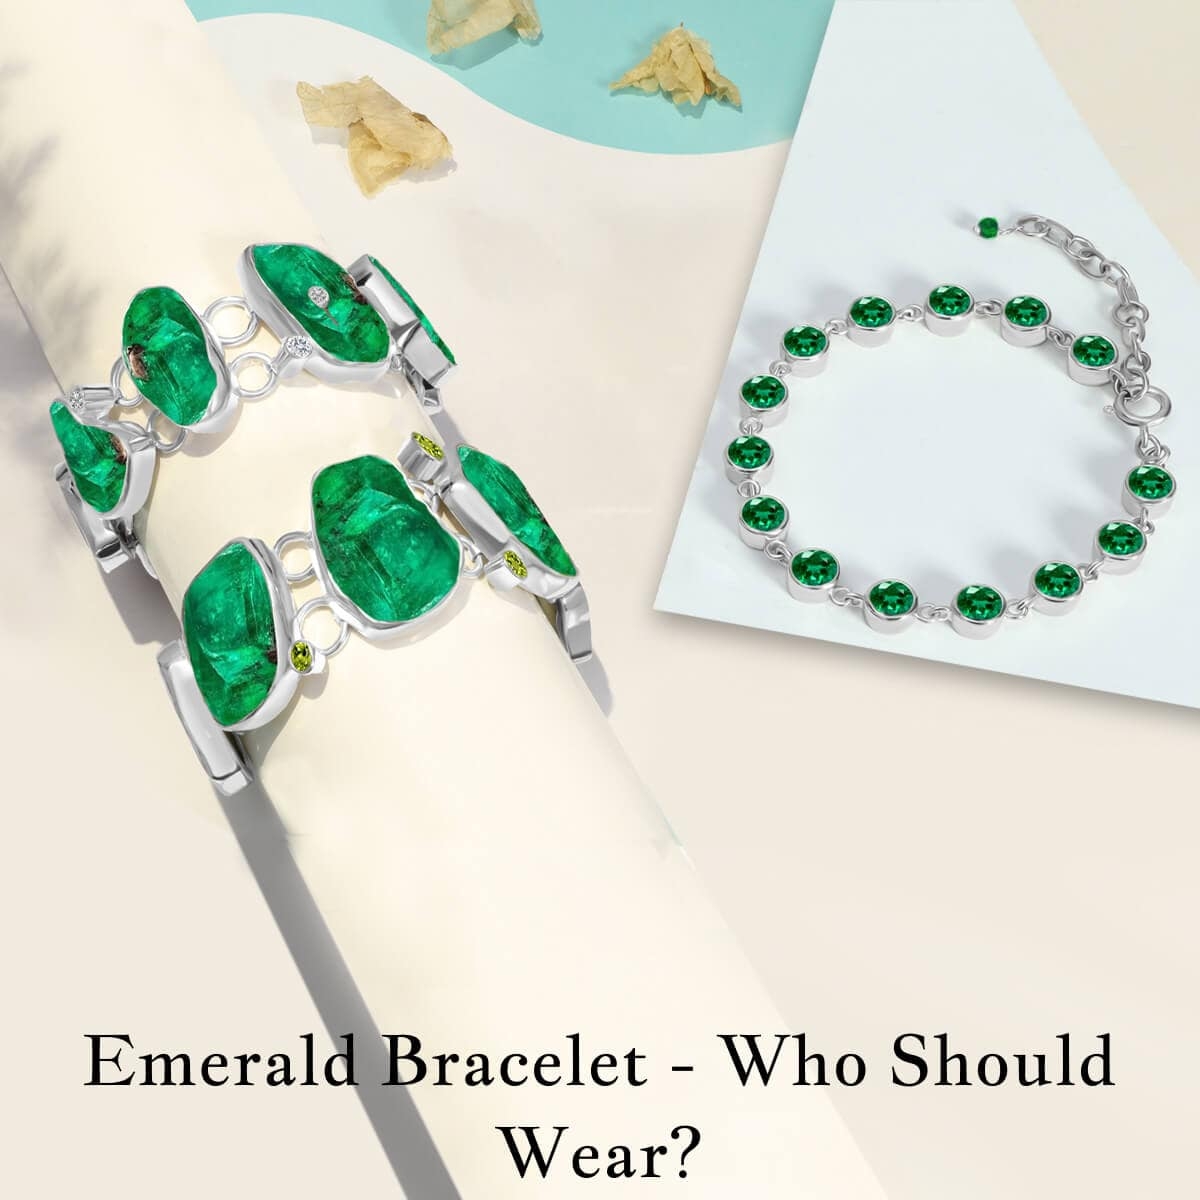 Who should wear the Emerald Bracelet